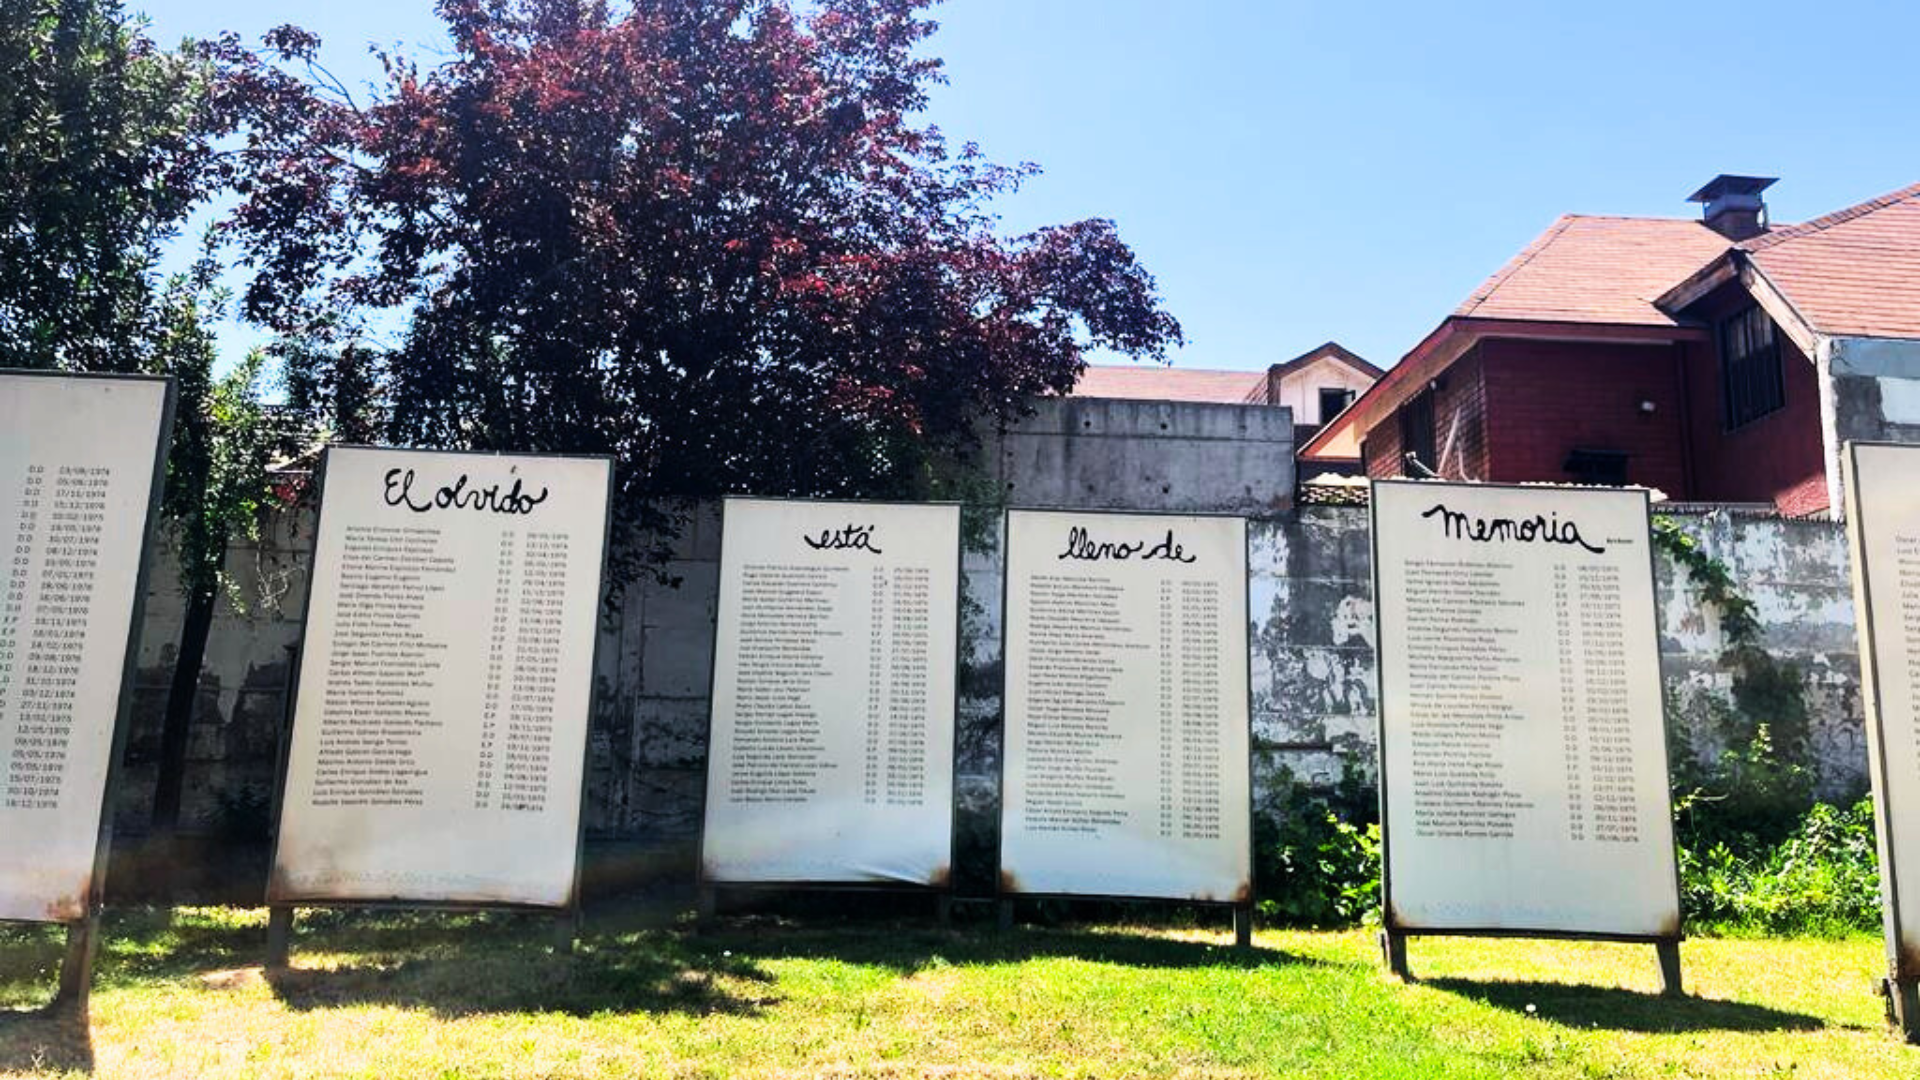 Villa Grimaldi bahçesinde bulunan anıtta “El olvido está lleno de memoria” yazıyor. Türkçeye “Unutmak, hafıza ile doludur” diye çevrilebilir.